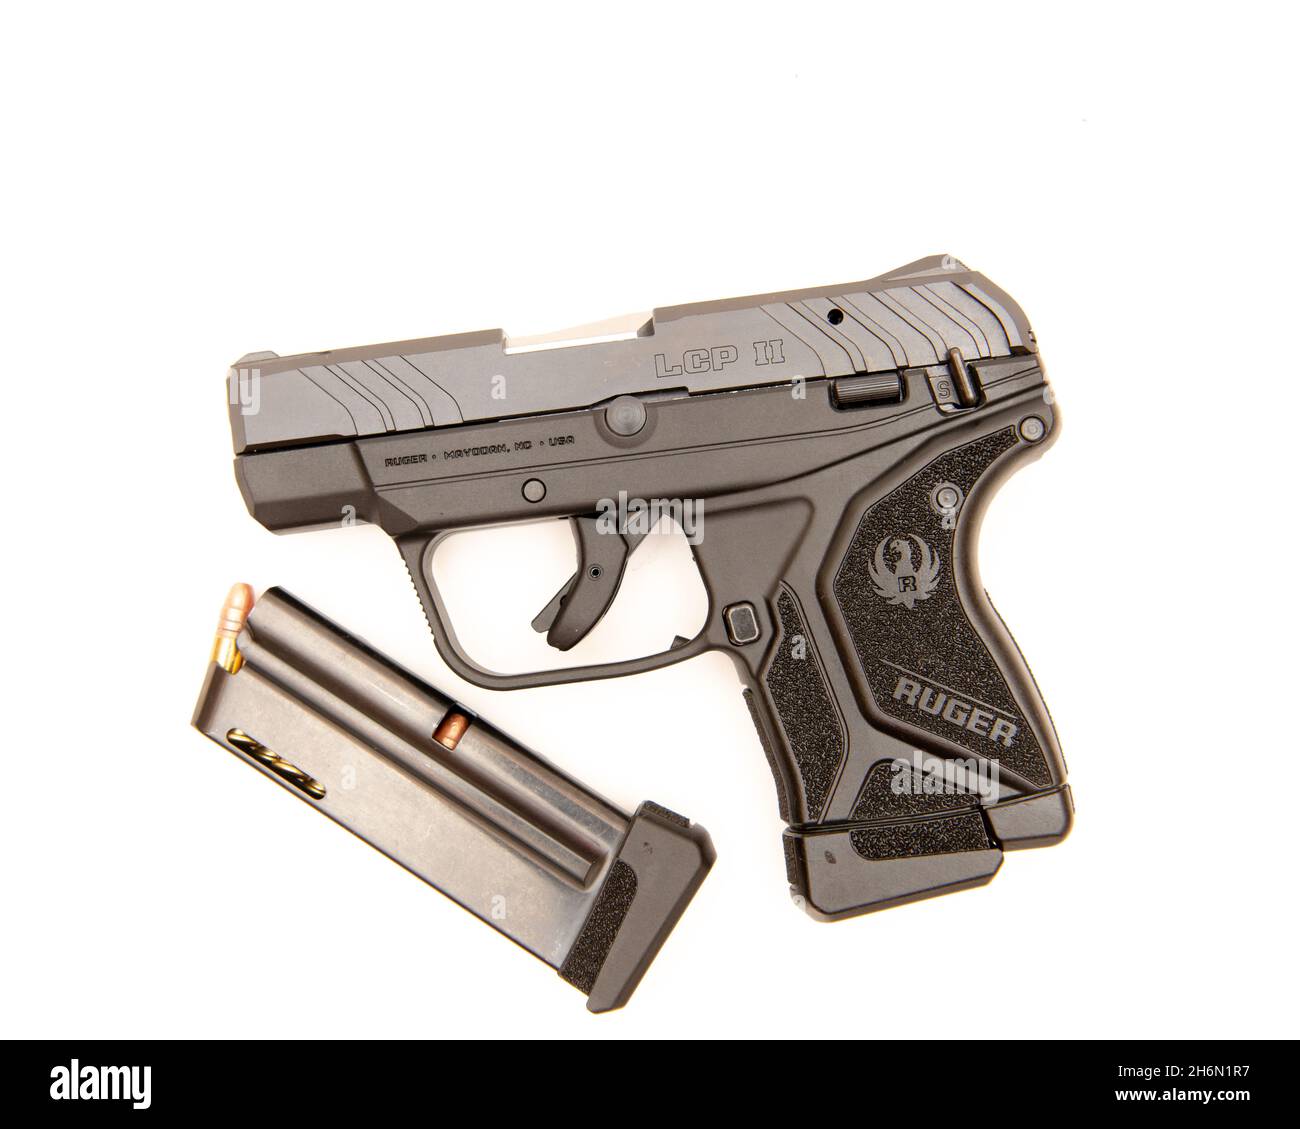 Eine halbautomatische 10-Schuss-Pistole Ruger LCP II im Kaliber .22 LR mit einem extra geladenen Magazin, isoliert auf Weiß. Stockfoto